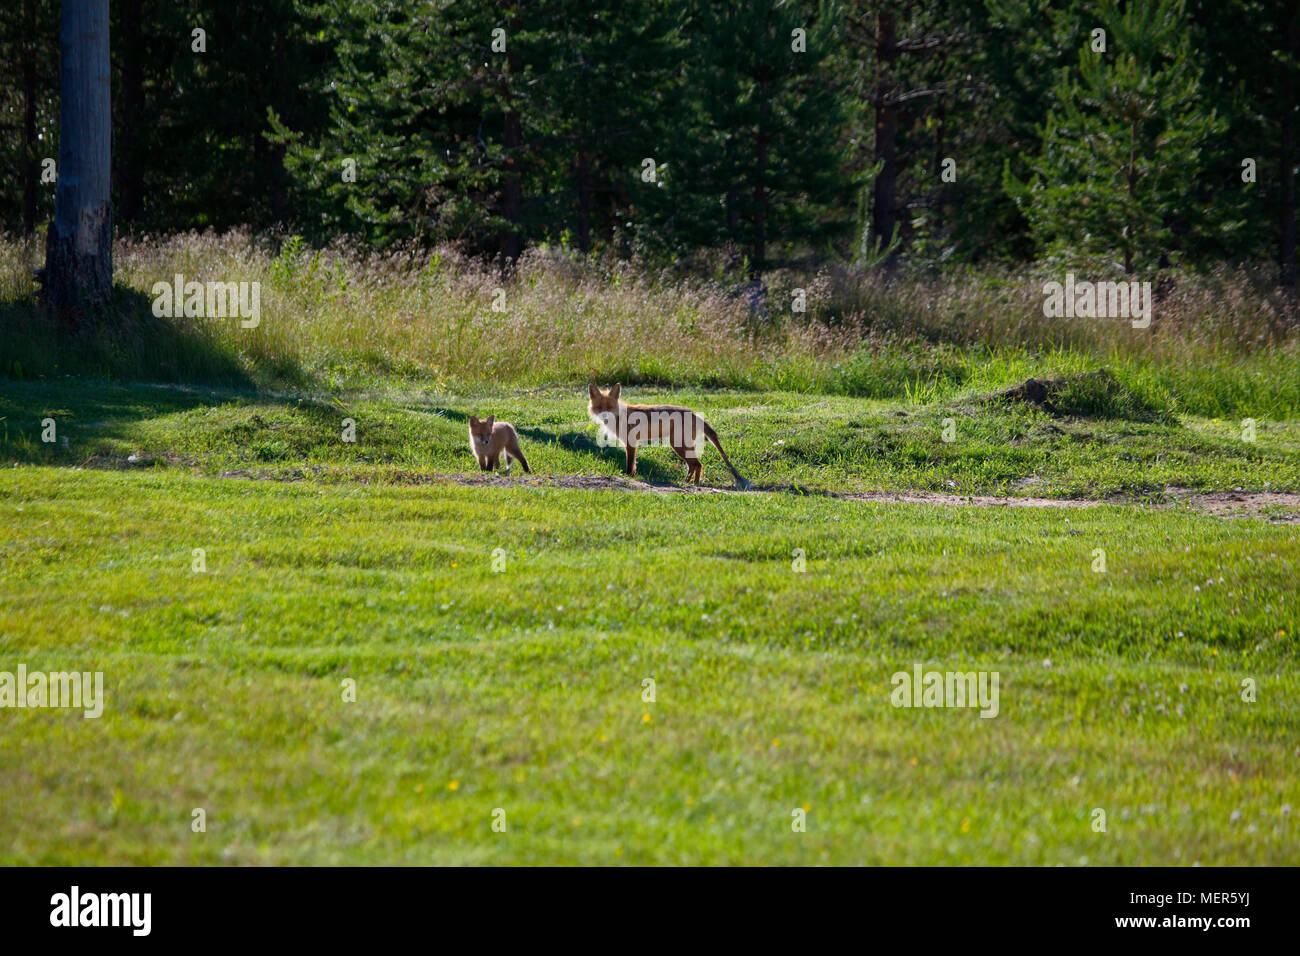 Red Fox (Vulpes vulpes) leiden Die räude. Wiese am Waldrand an einem sonnigen Sommertag. Stockfoto